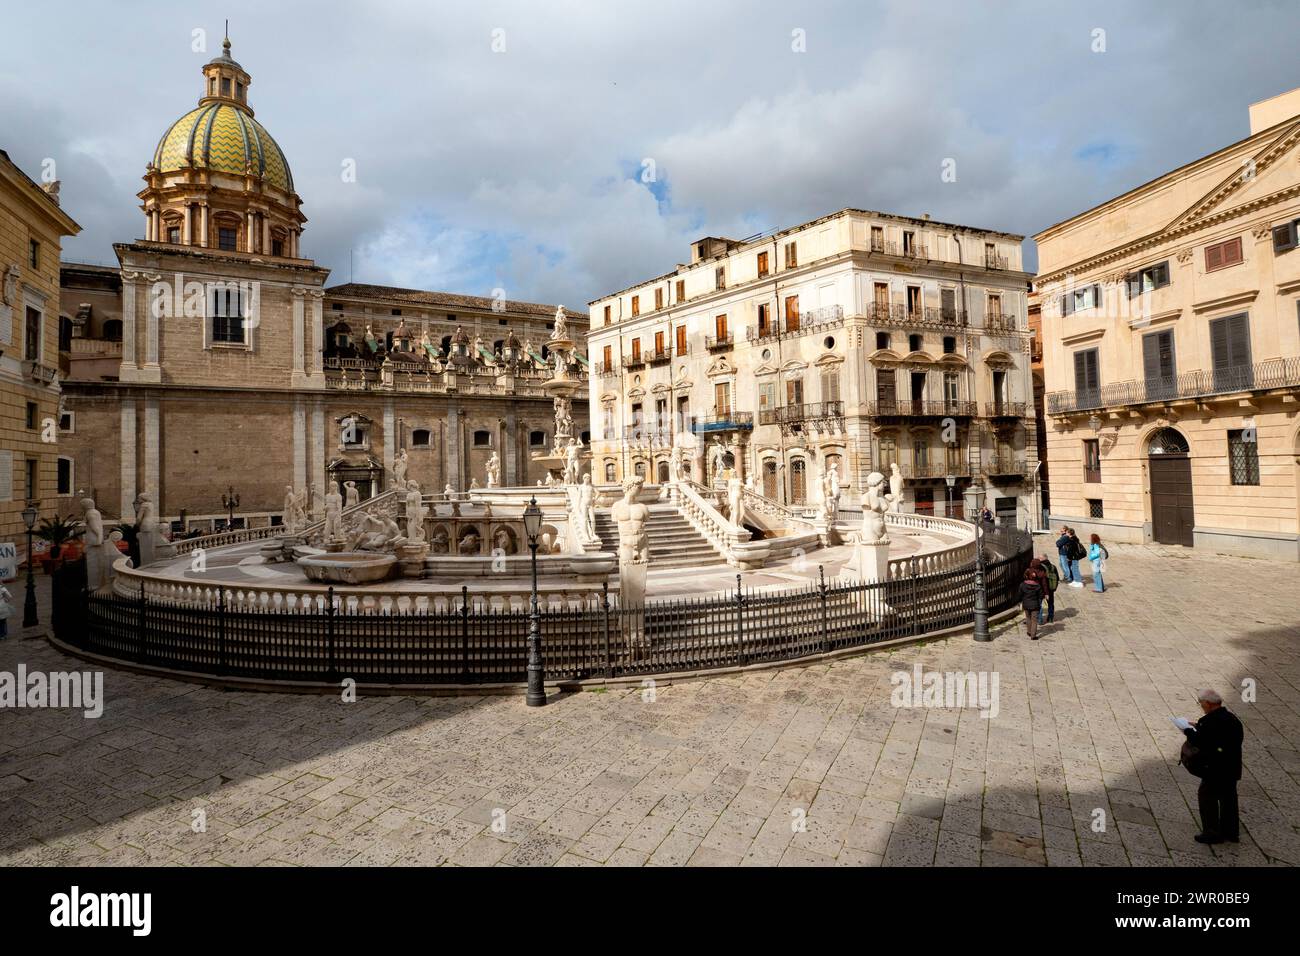 Fontana Pretoria nella città di Palermo sull'isola italiana di Sicilia Foto Stock